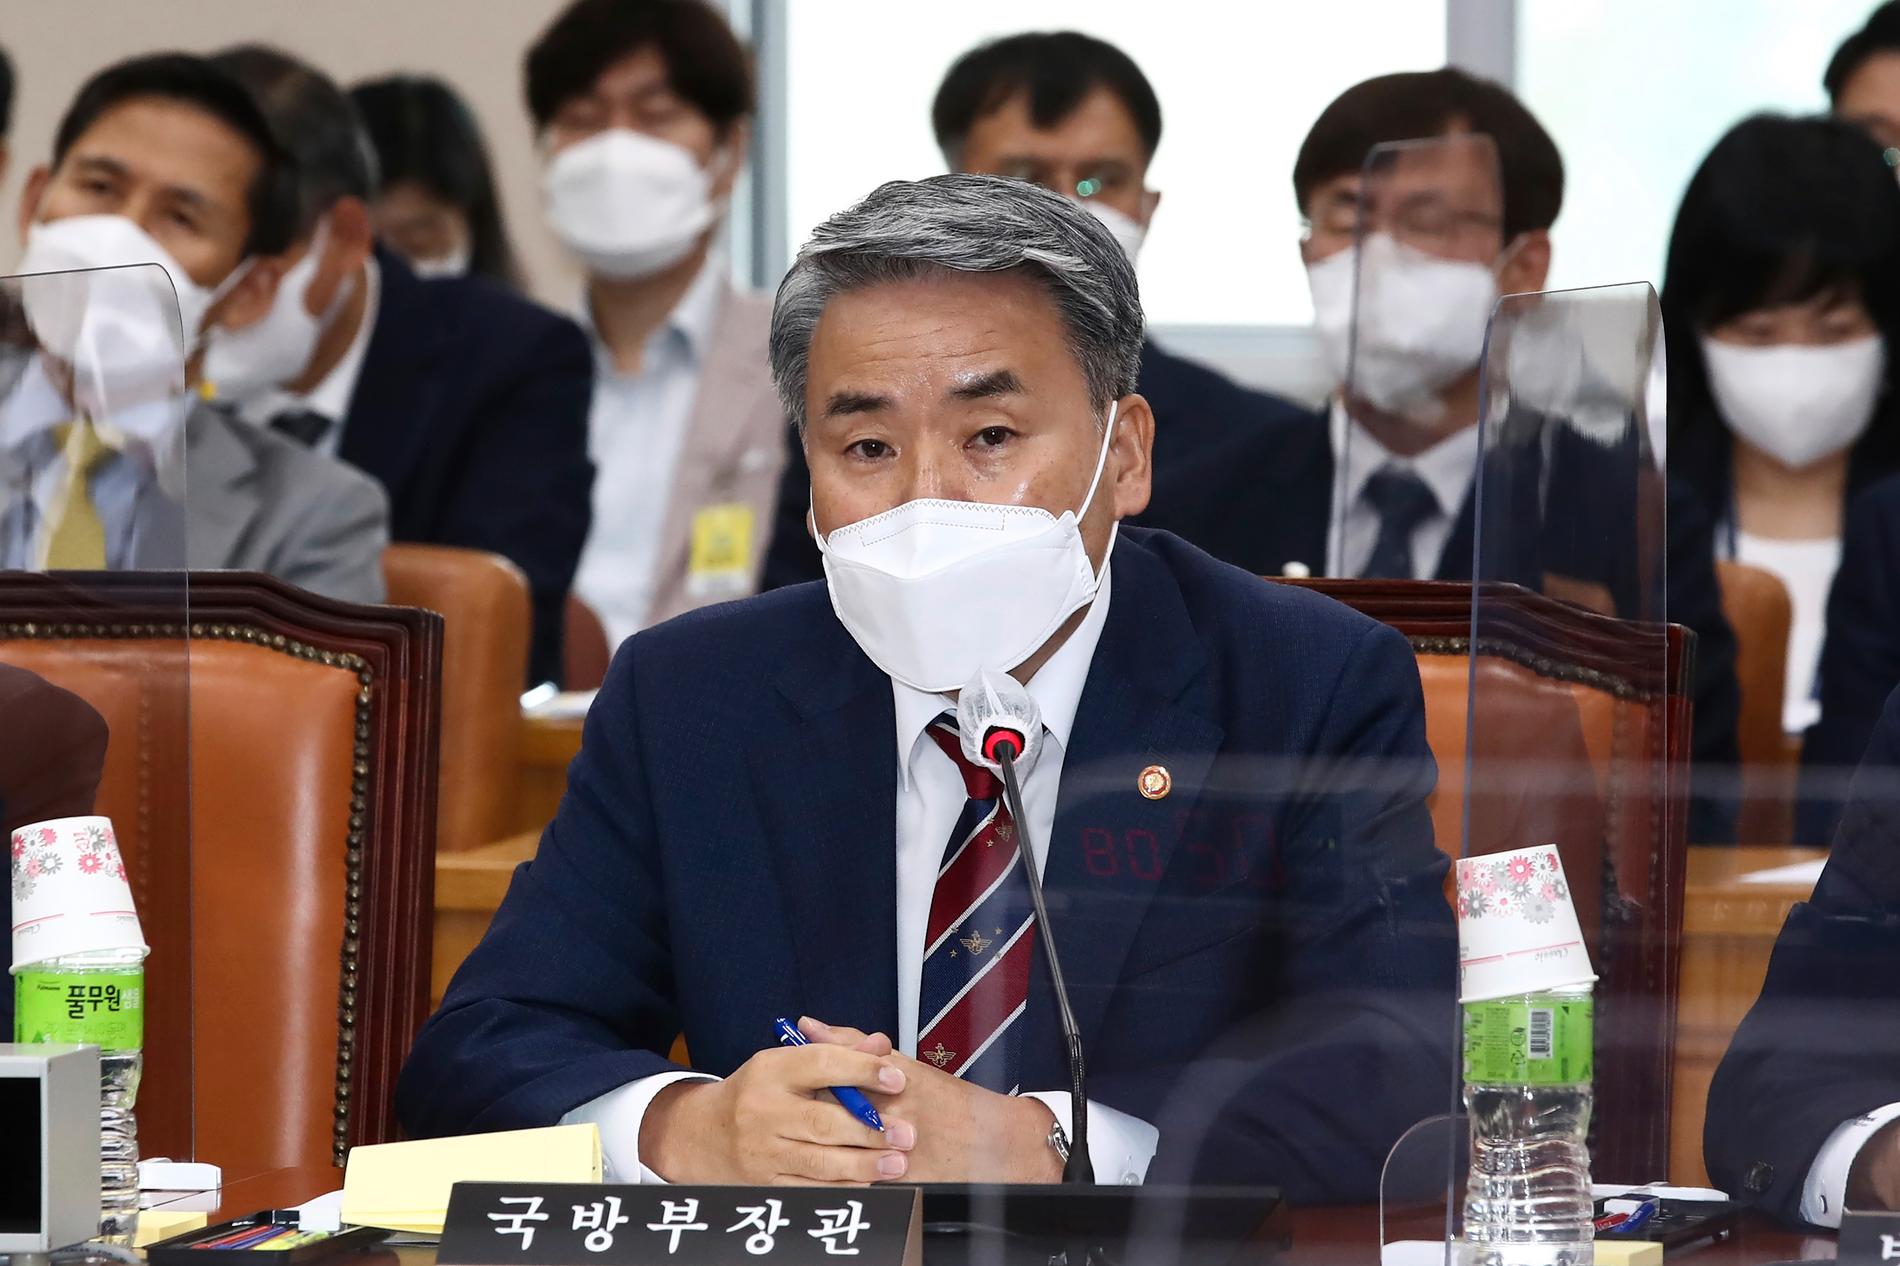 Sydkoreas försvarsminister Lee Jong-sup vid den parlamentariska försvarskommittén i Seoul under onsdagen, där frågan om en opinionsundersökning ska hjälpa till att avgöra om medlemmarna i K-popbandet BTS ska beviljas frisedel från militärtjänsten avhandlades.